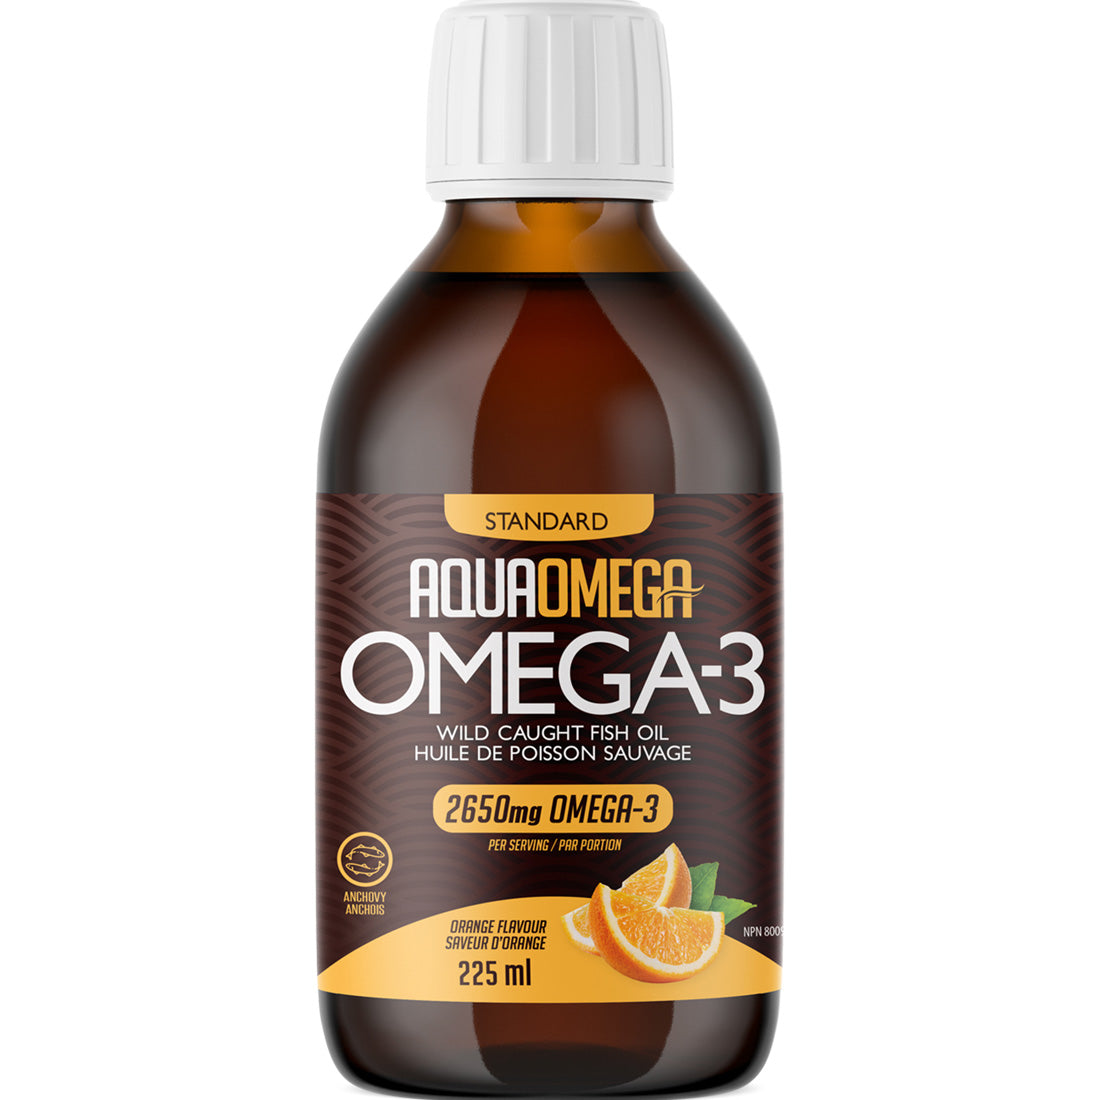 AquaOmega 3:1 Daily Maintenance Omega 3 Liquid